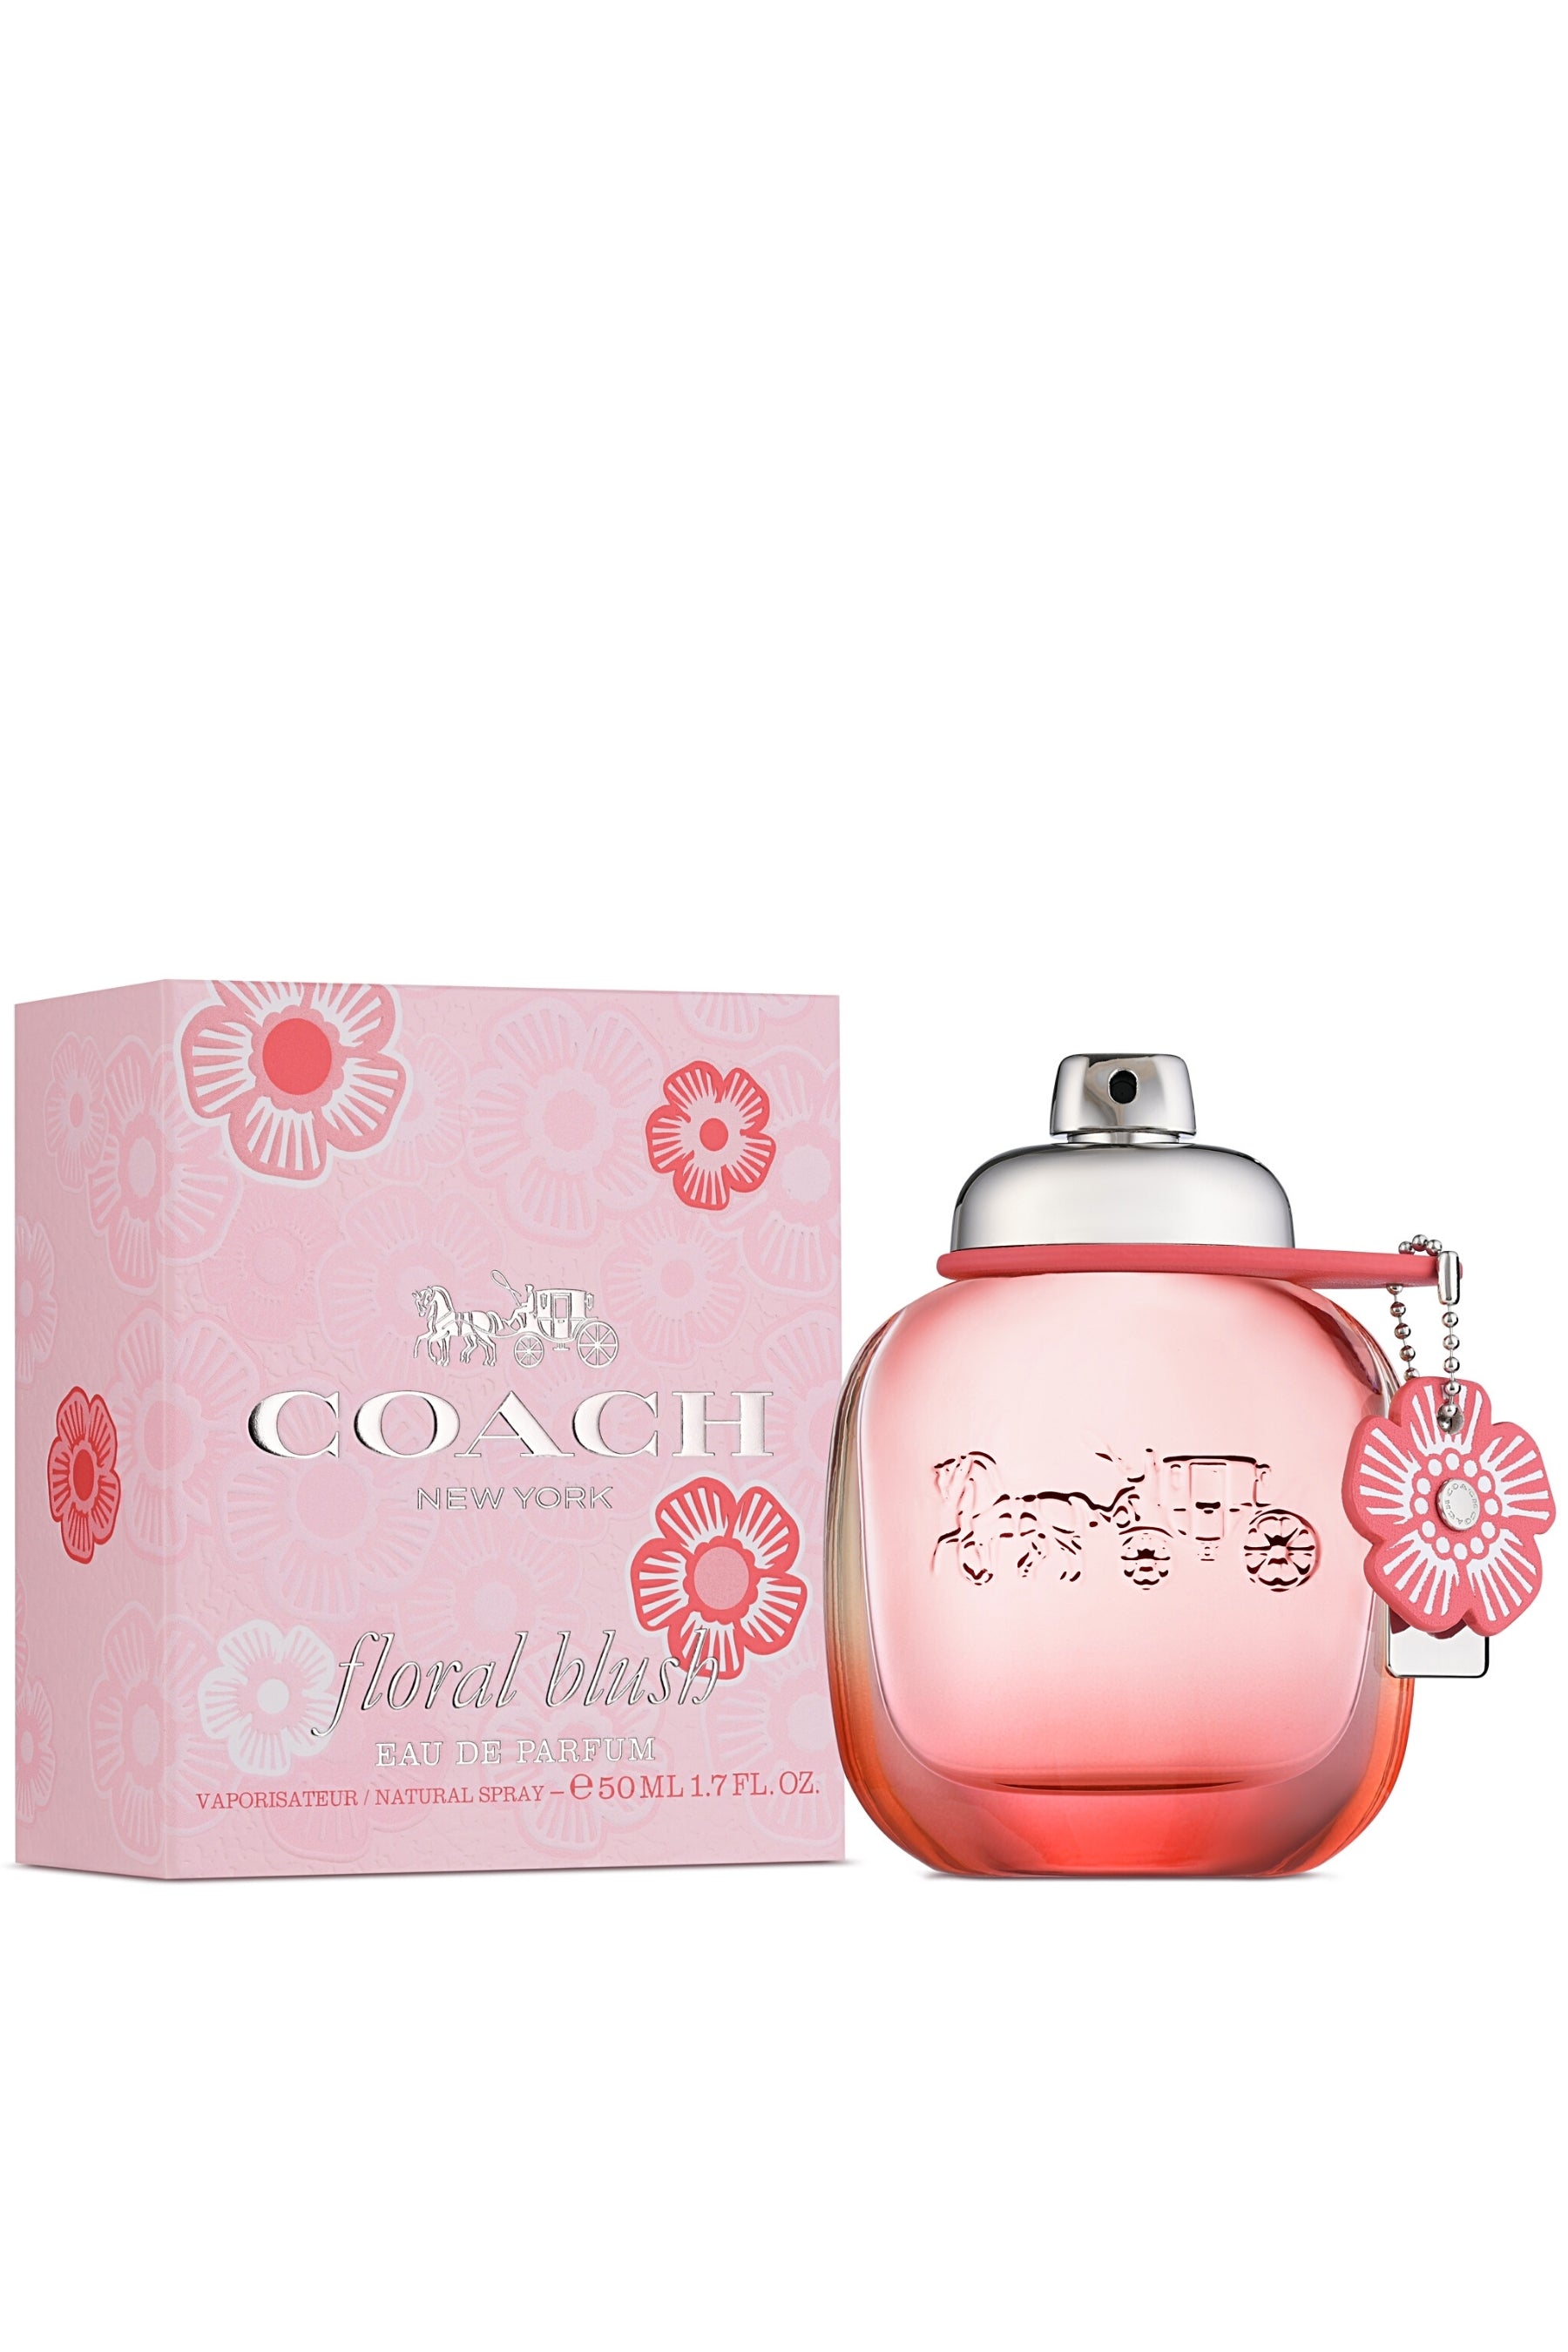 Victoria's Secret Tease Rebel Women's Fragrance Mist - 8.4fl oz for sale  online